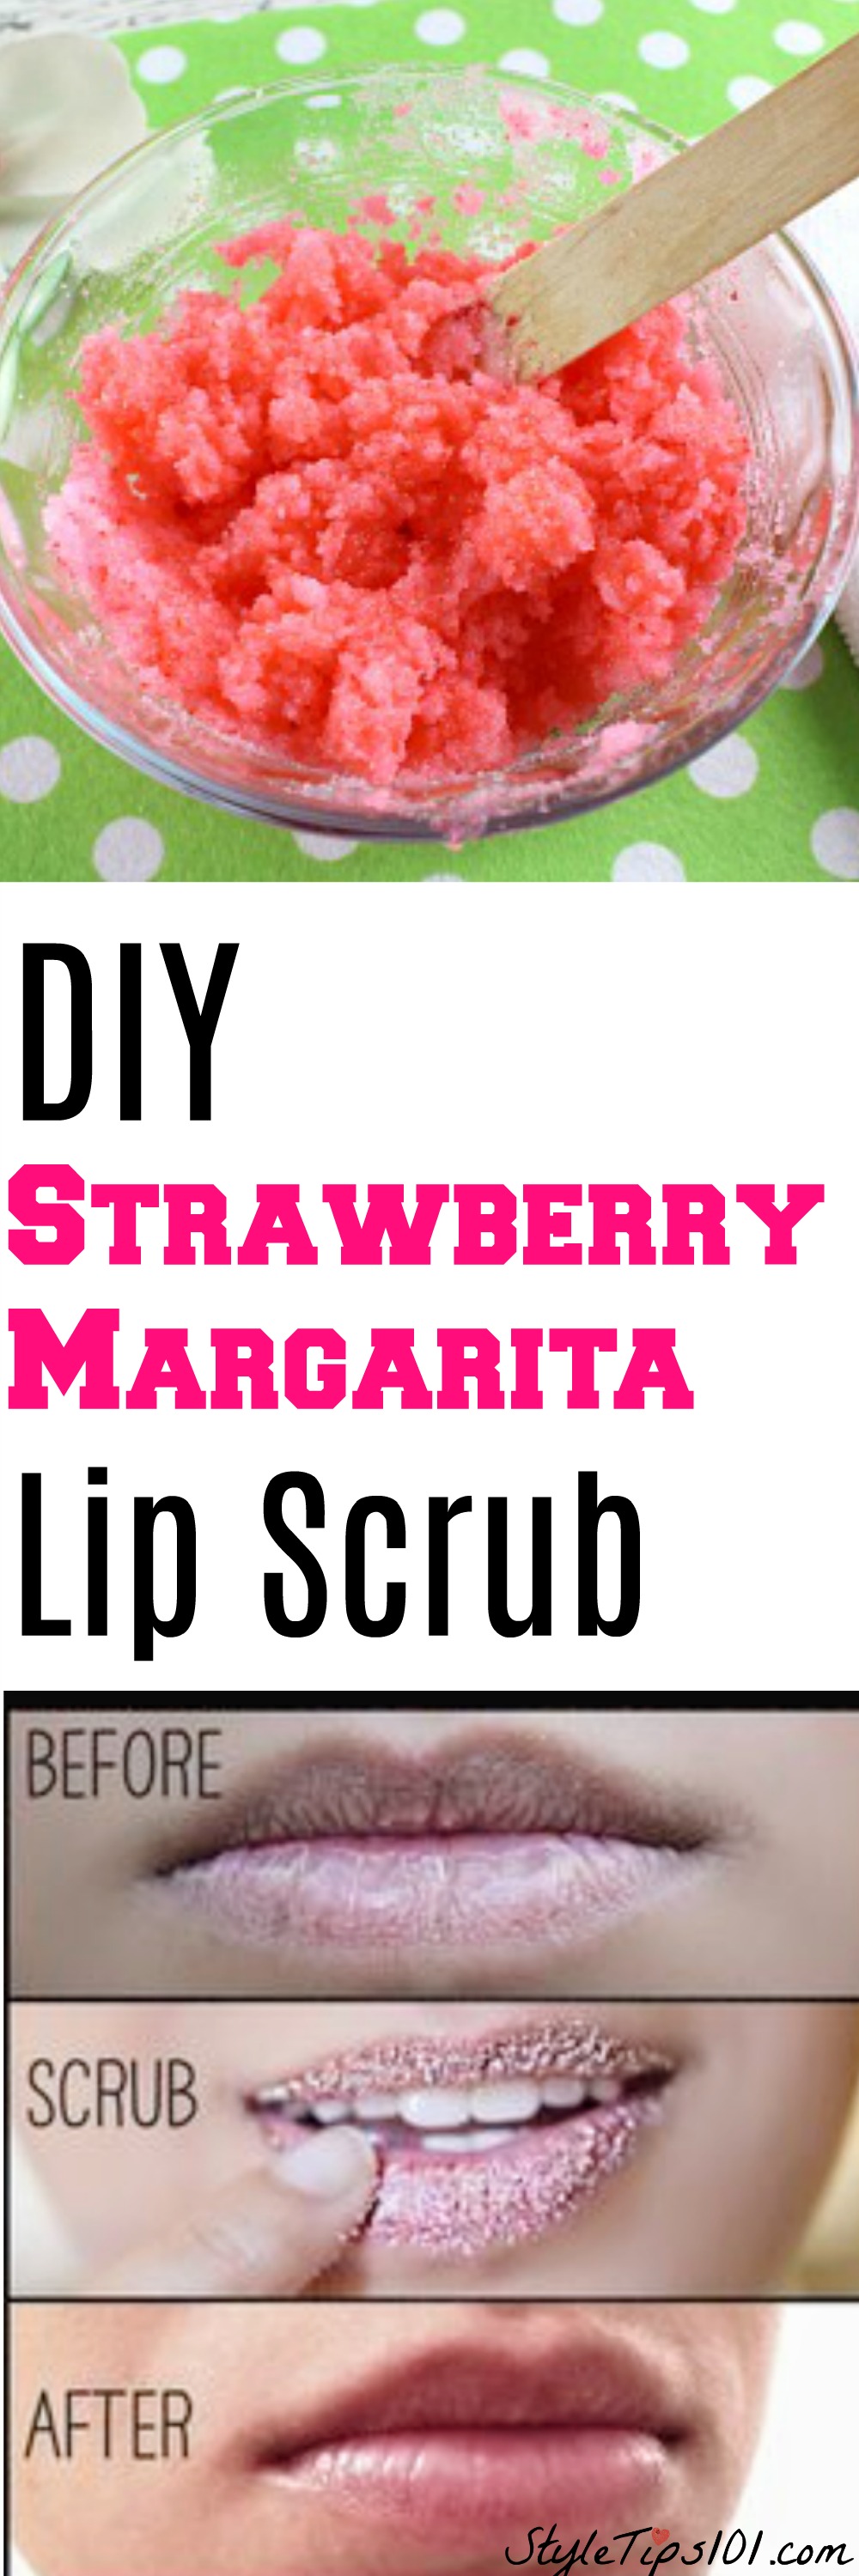 DIY Strawberry Margarita Lip Scrub